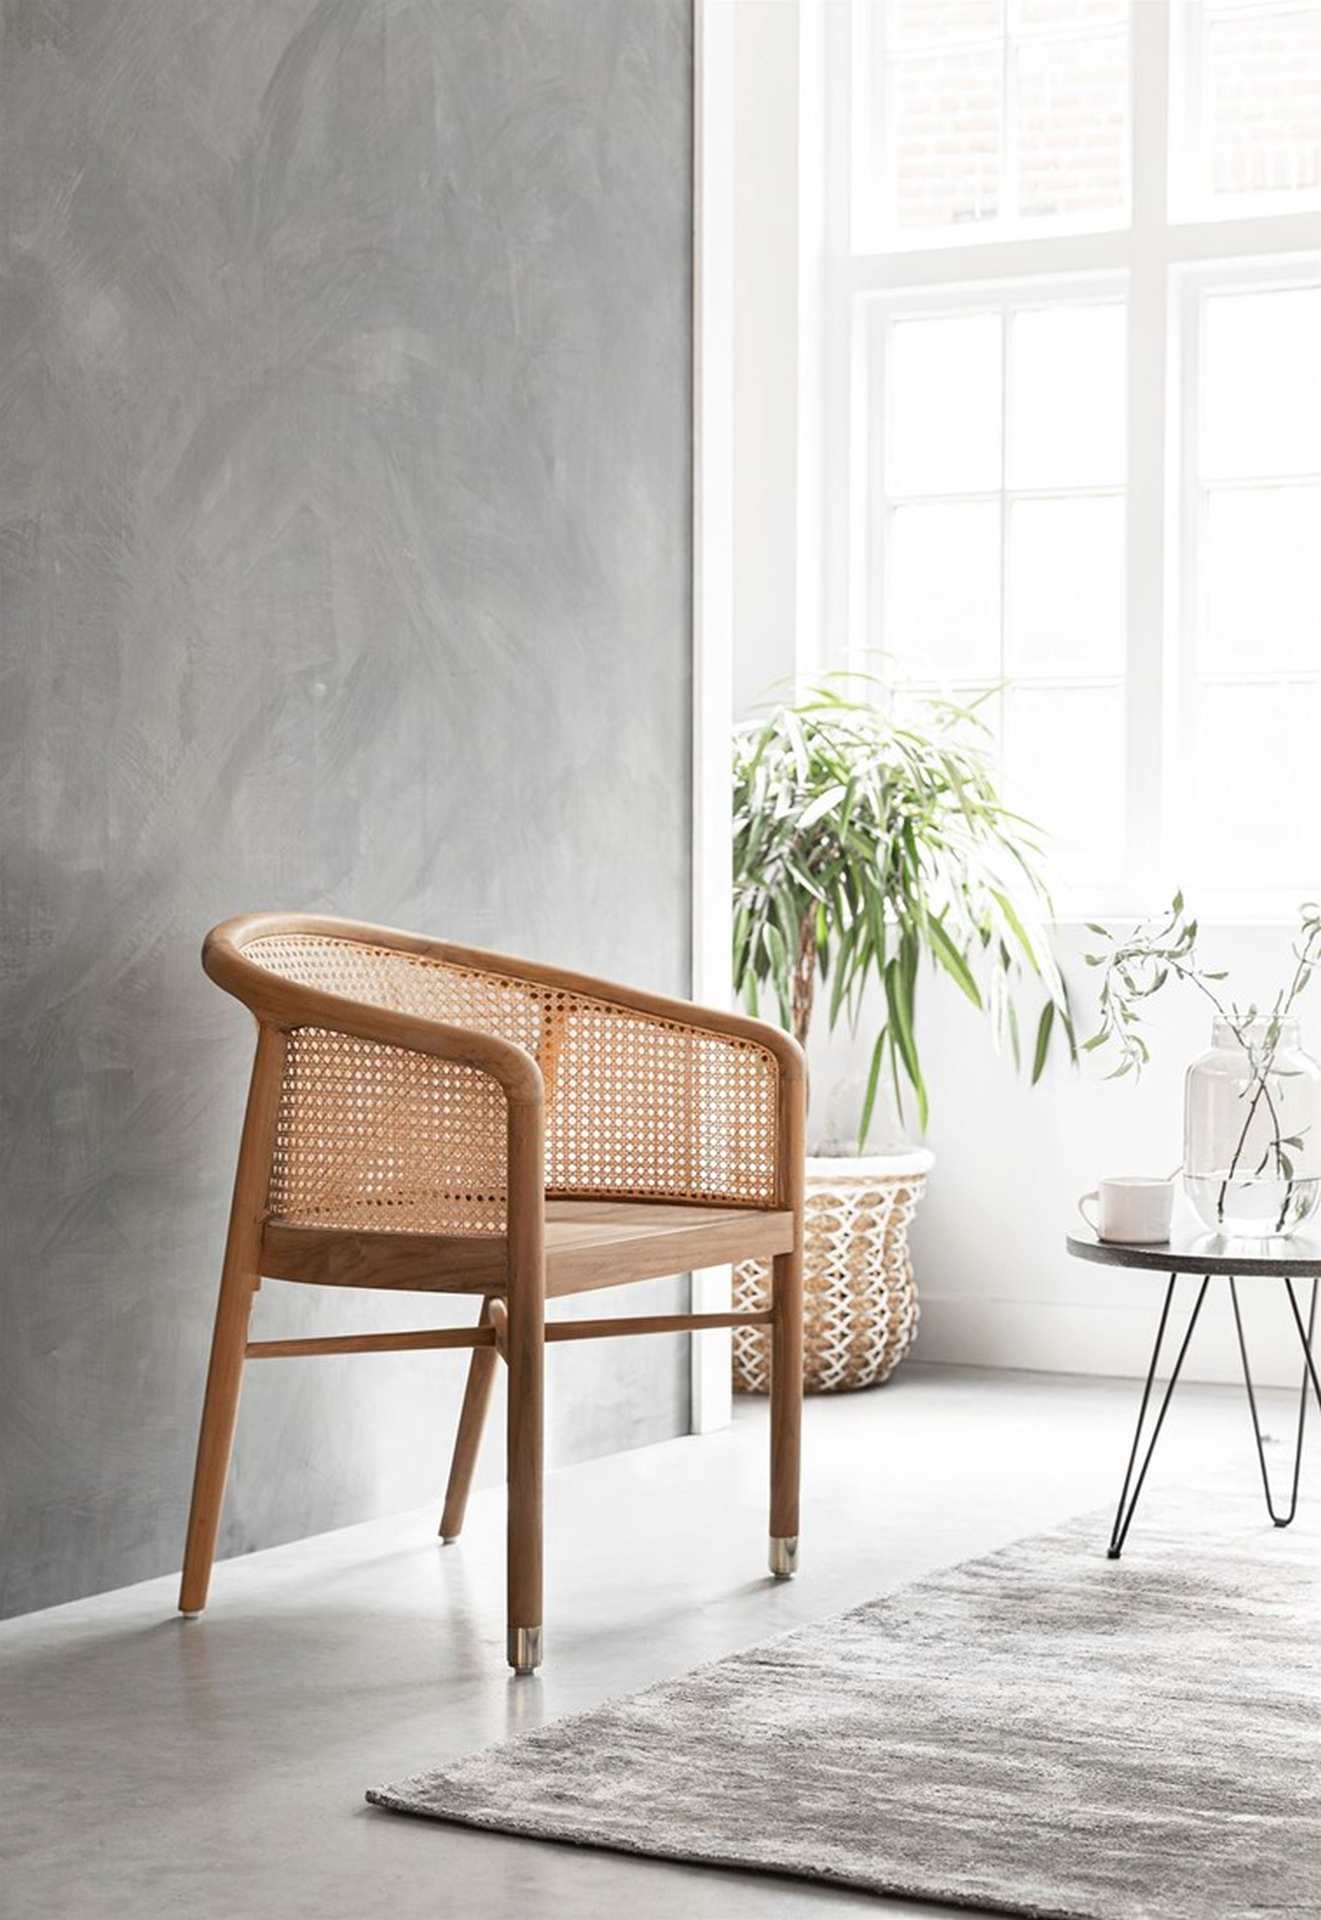 Der Loungesessel Castro überzeugt mit seinem modernen Design aber auch mit seinem Boho Stil. Gefertigt wurde der Sessel aus Teakholz, welches einen natürlichen Farbton besitzt. Die Sitz- und Rückenfläche sind aus Rattan, welche ebenfalls einen natürlichen